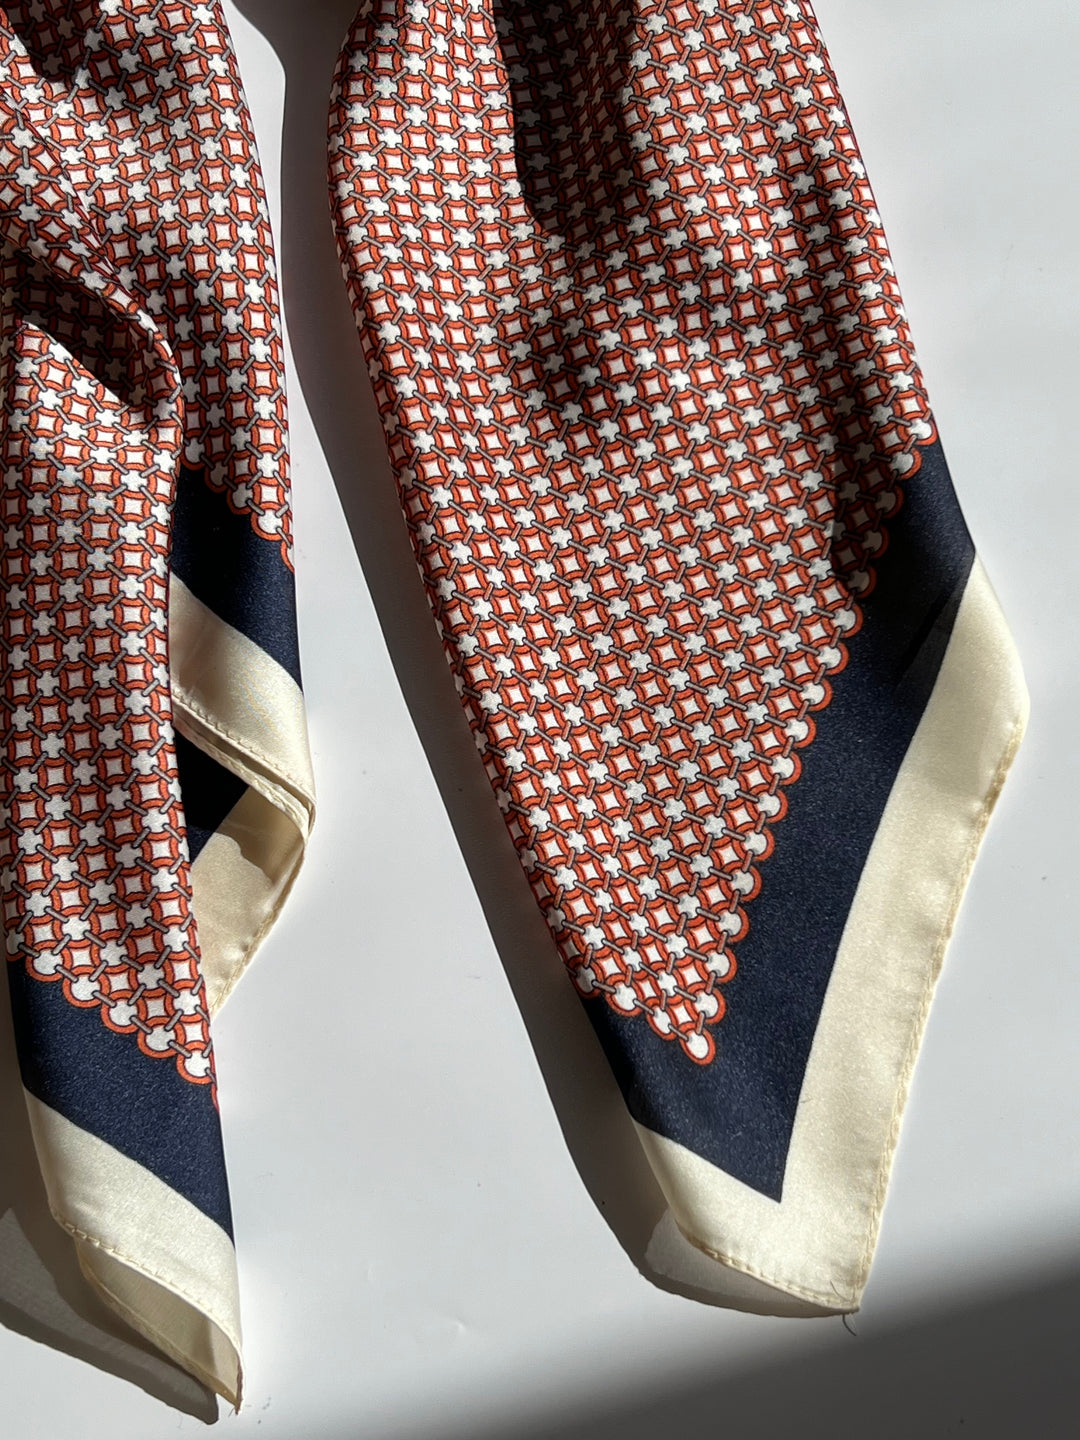 Tørklæde med Offwhite, Rødt og Mørkeblåt Mønster | 70 x 70 cm Studio Hafnia